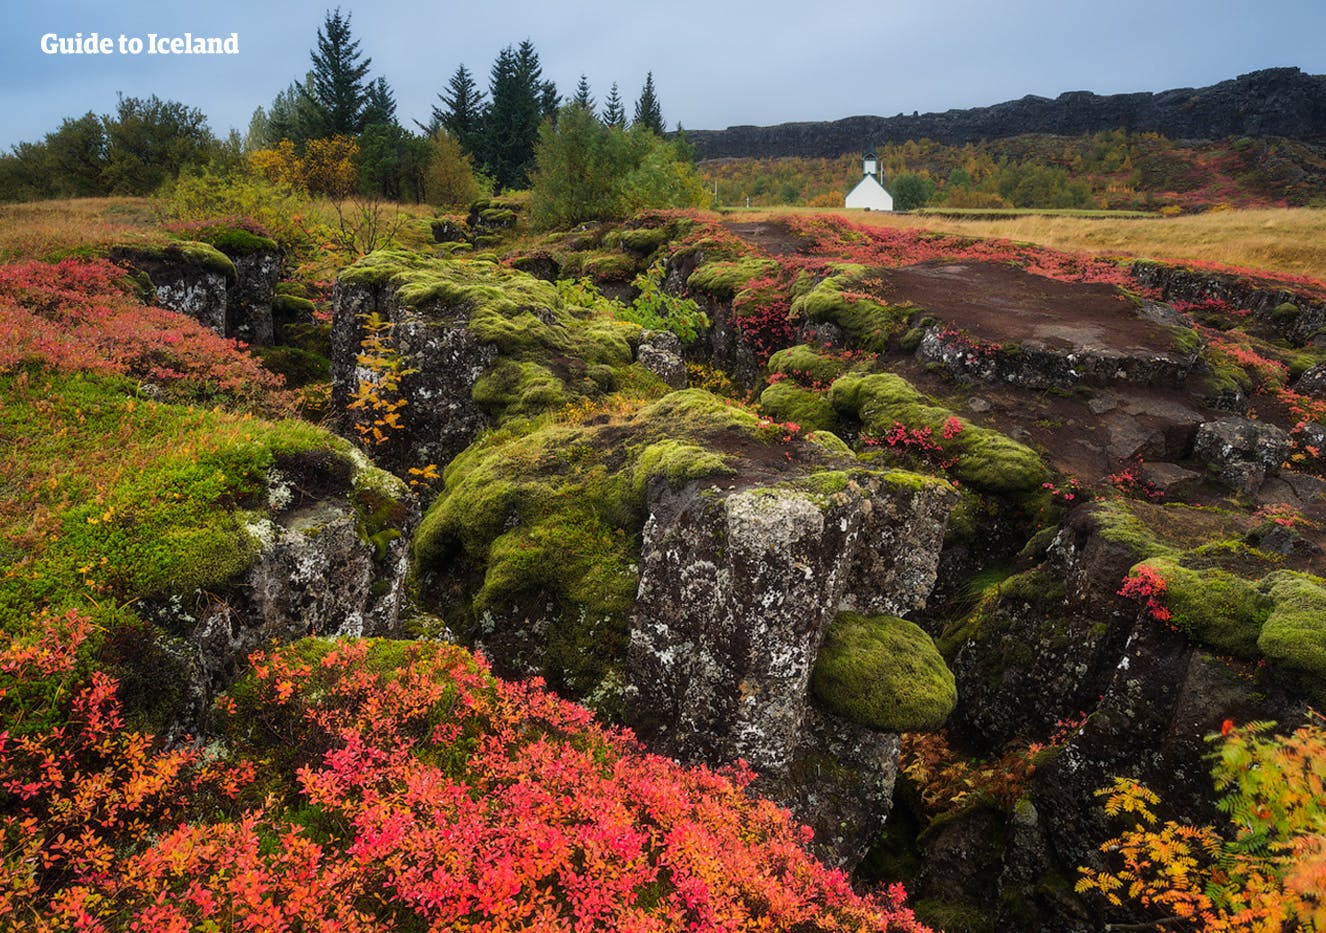 被苔藓覆盖的辛格维利尔国家公园(Þingvellir)是冰岛黄金圈三大旅游景点之一